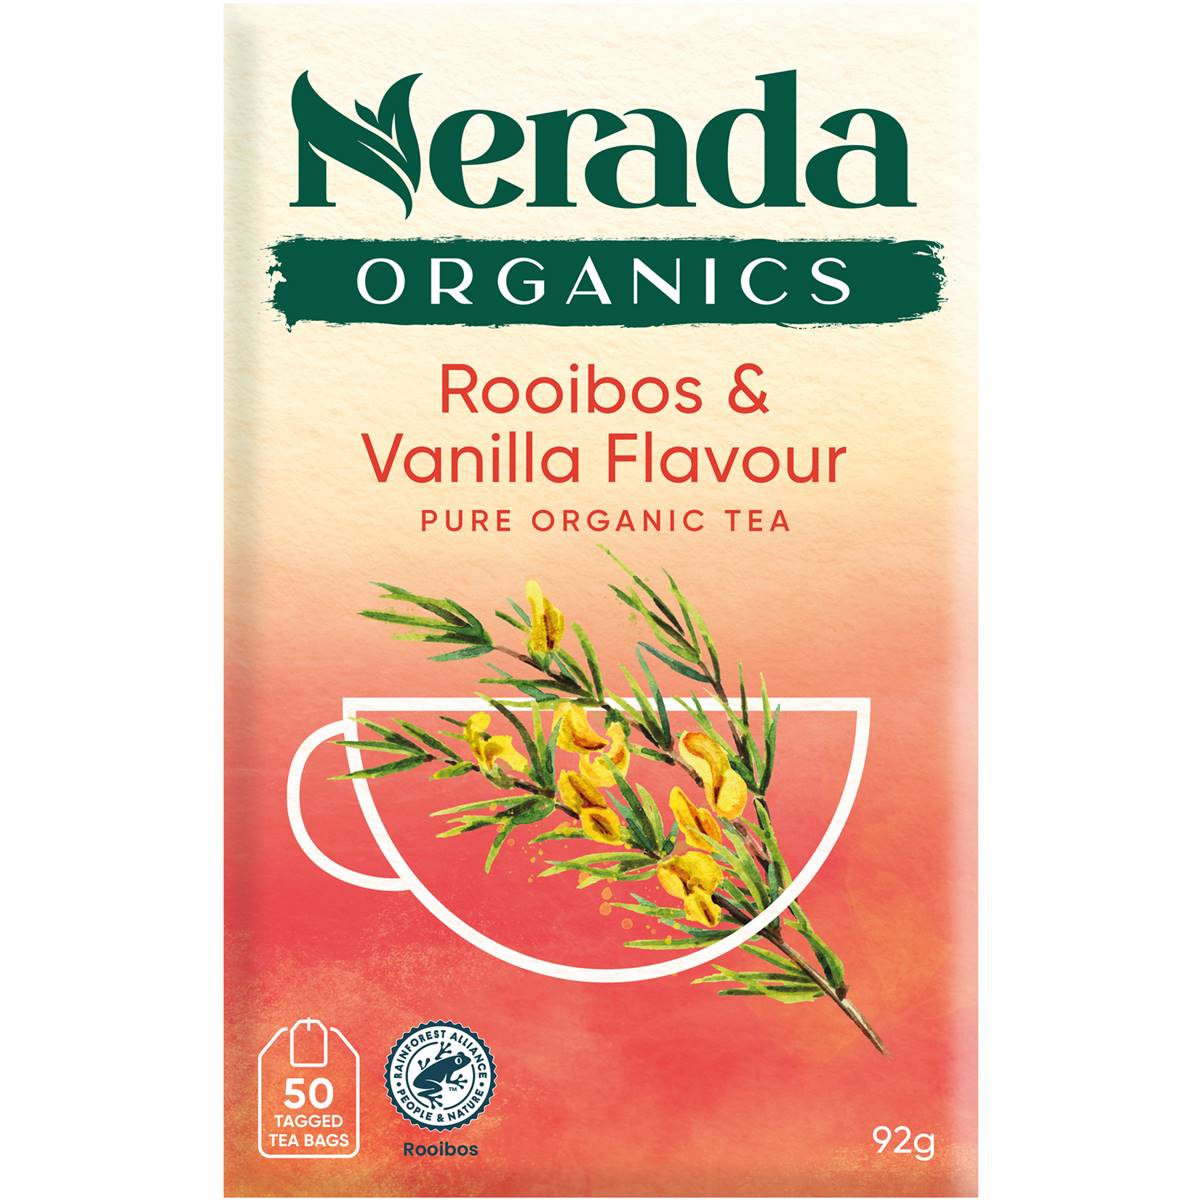 Calories in Nerada Organic Rooibos & Vanilla Tea Bags